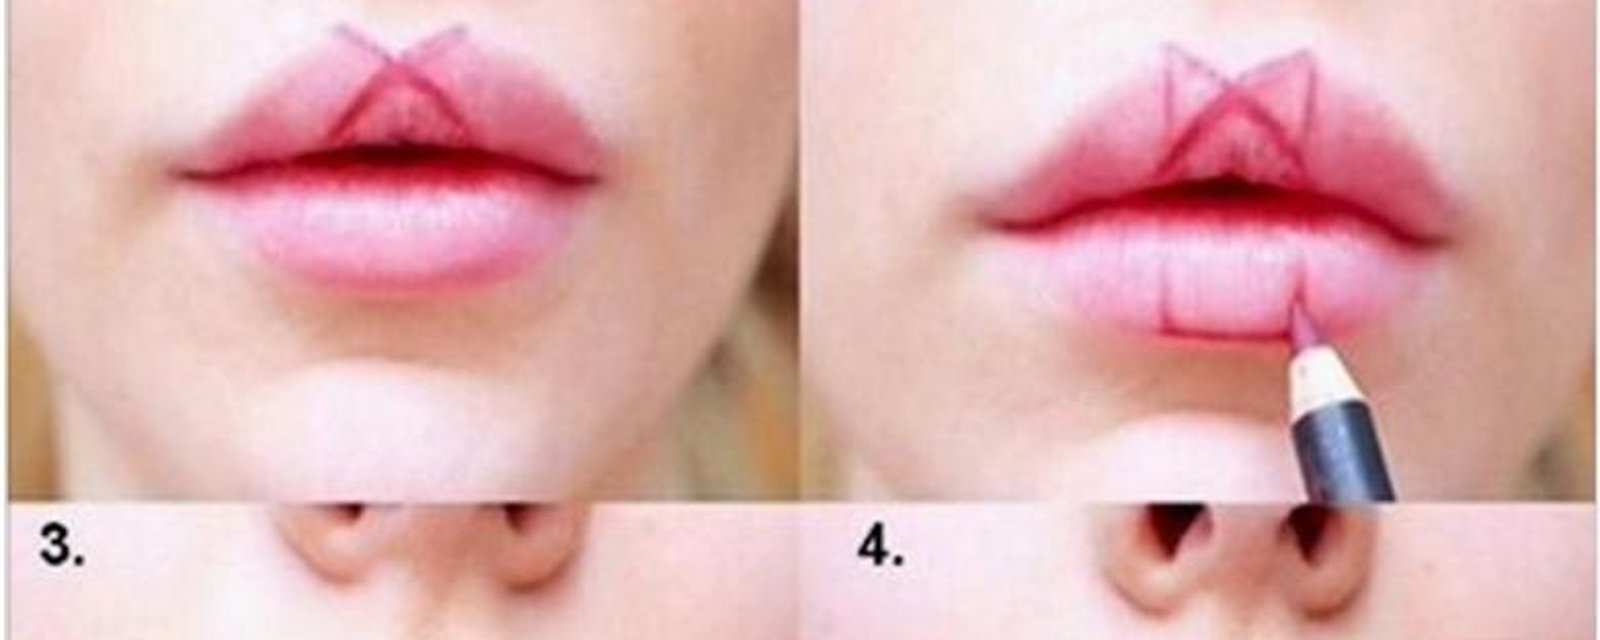 Elle marque des formes géométriques sur ses lèvres et le résultat est génial!